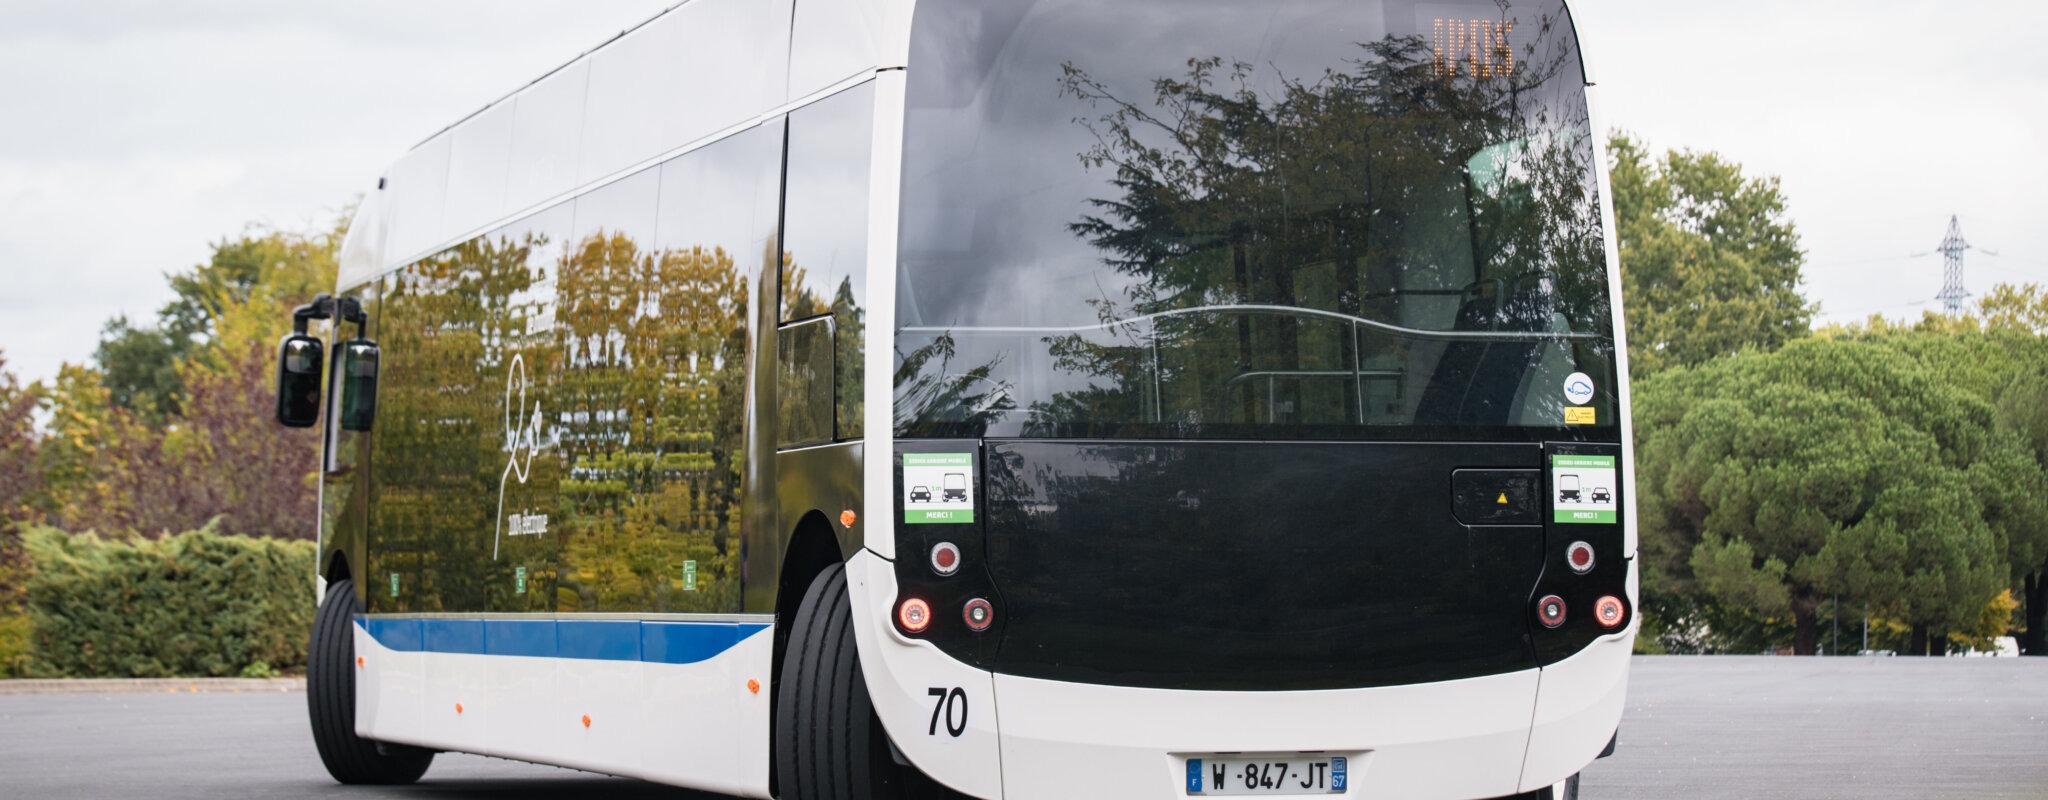 D’une récompense à une fermeture en quatre ans, Alstom a coulé son bus à Hangenbieten